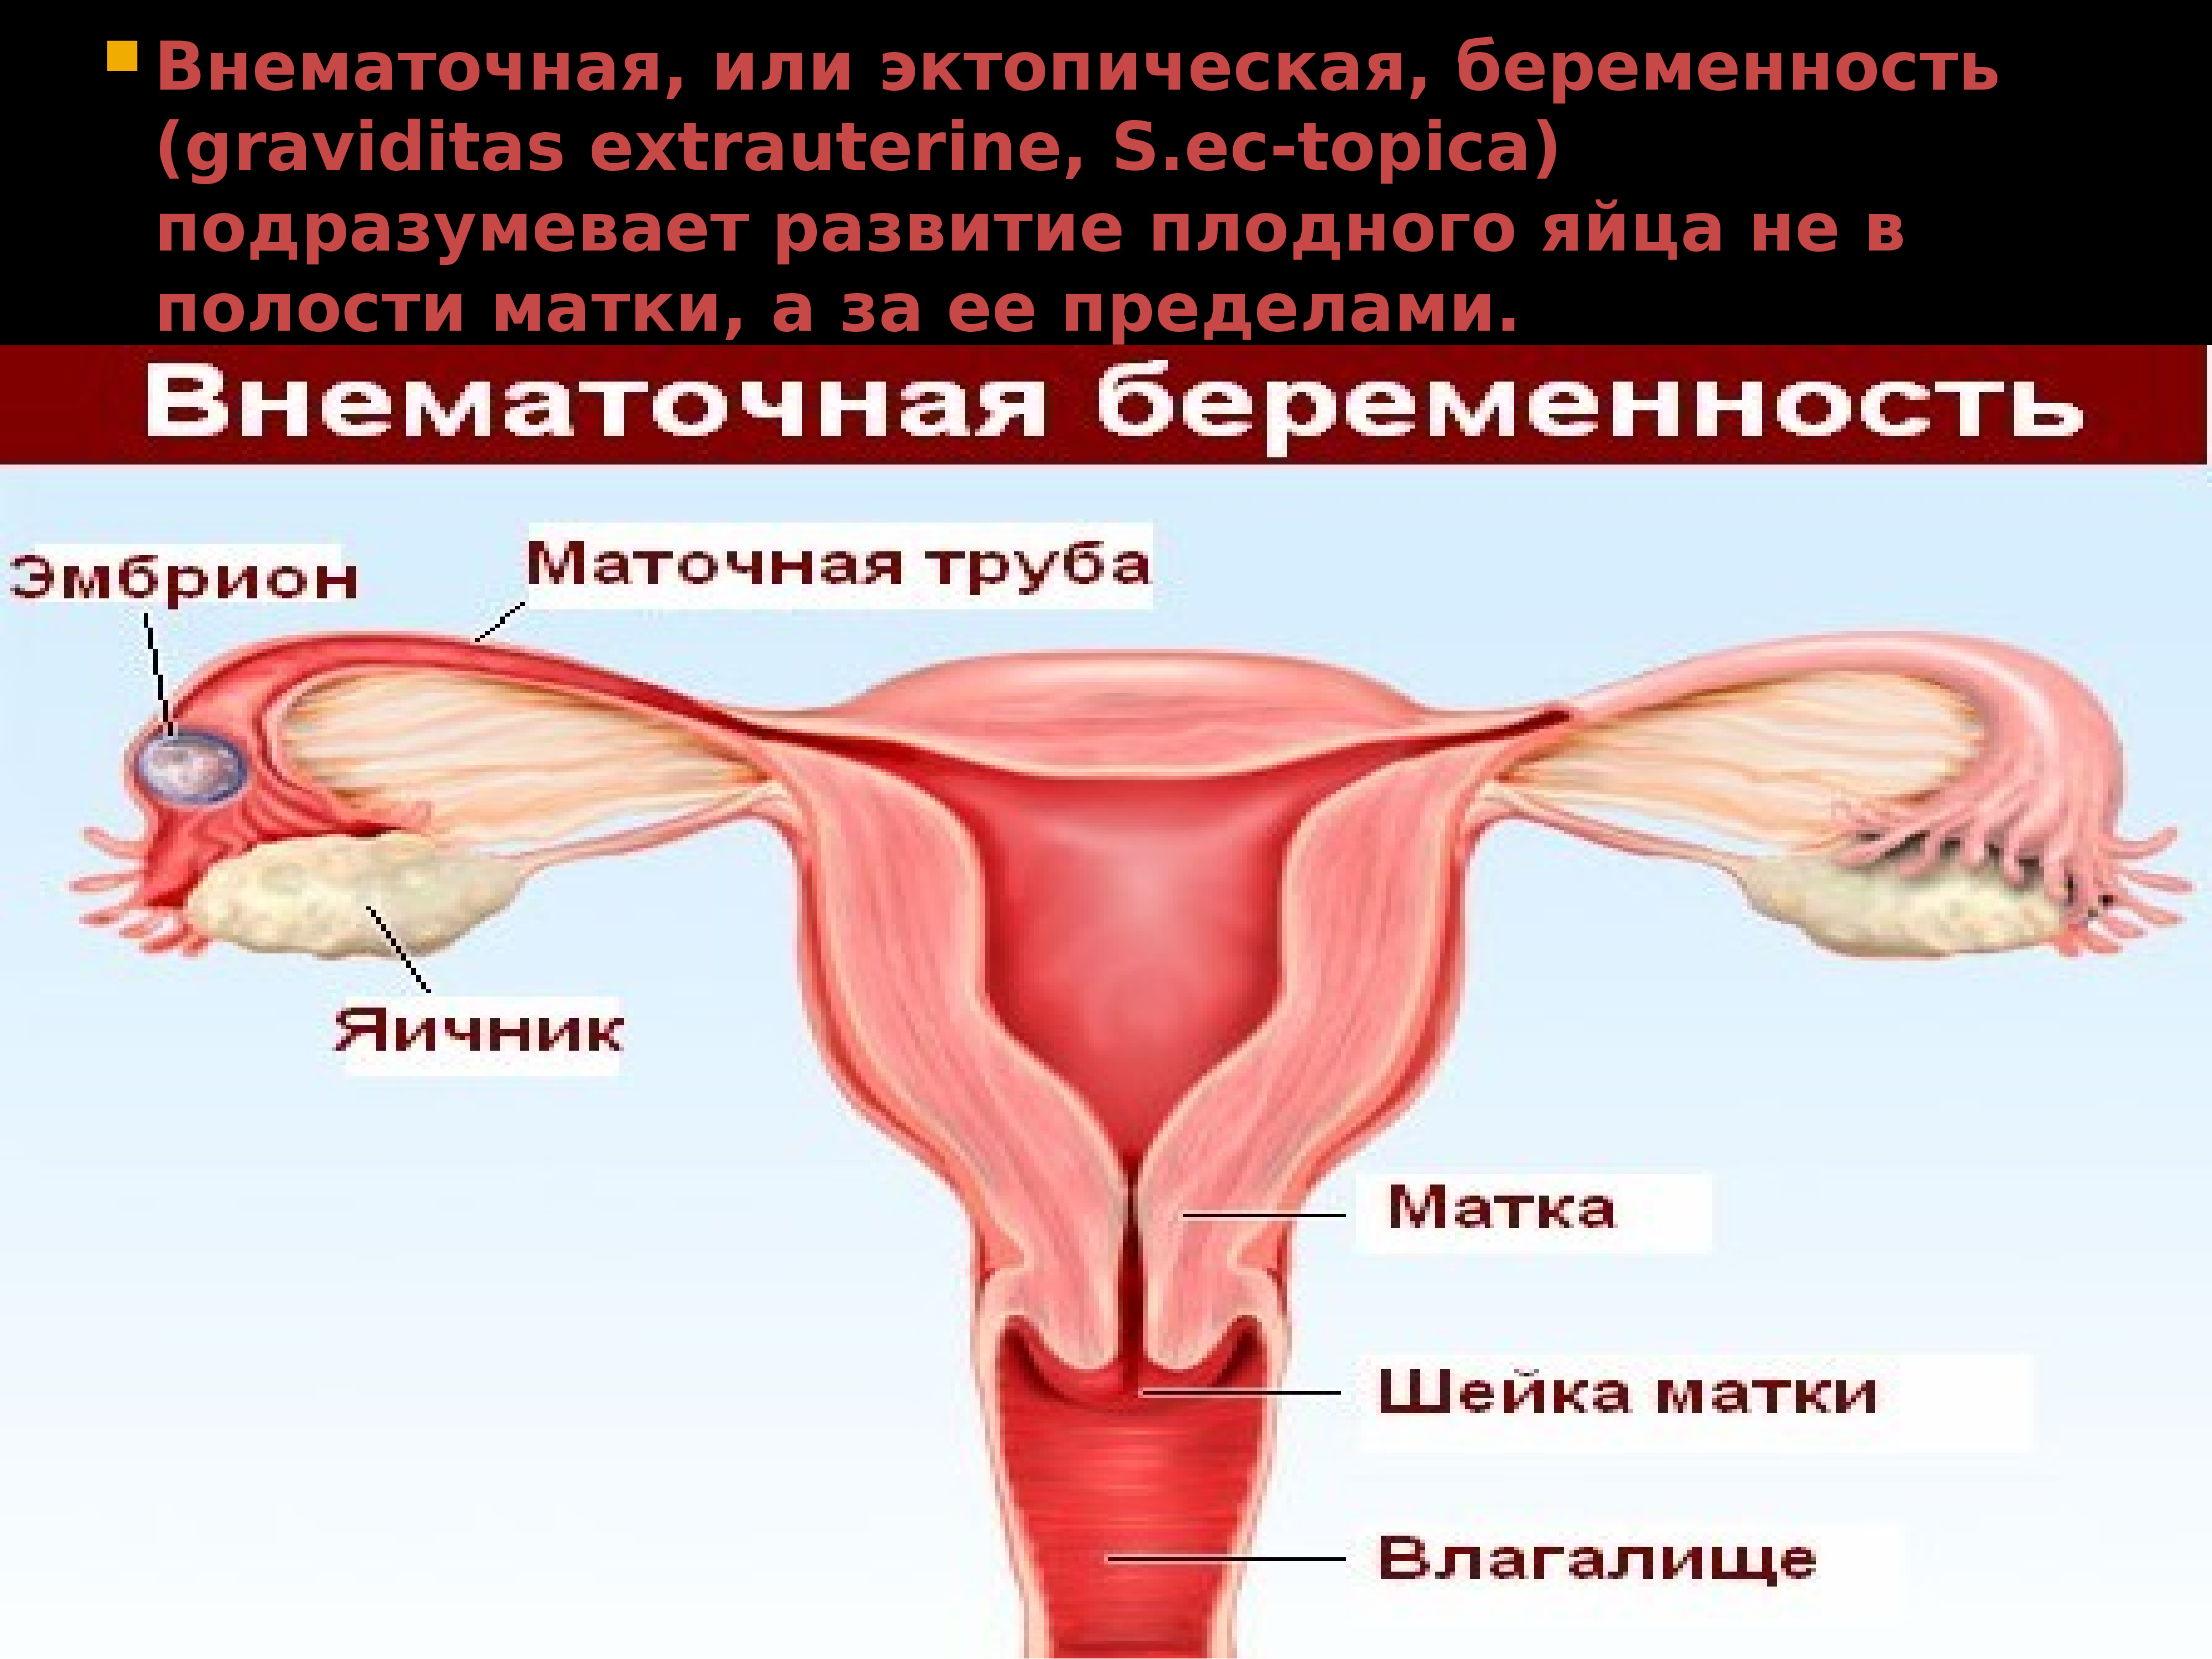 увеличивается ли грудь при внематочной беременности фото 7